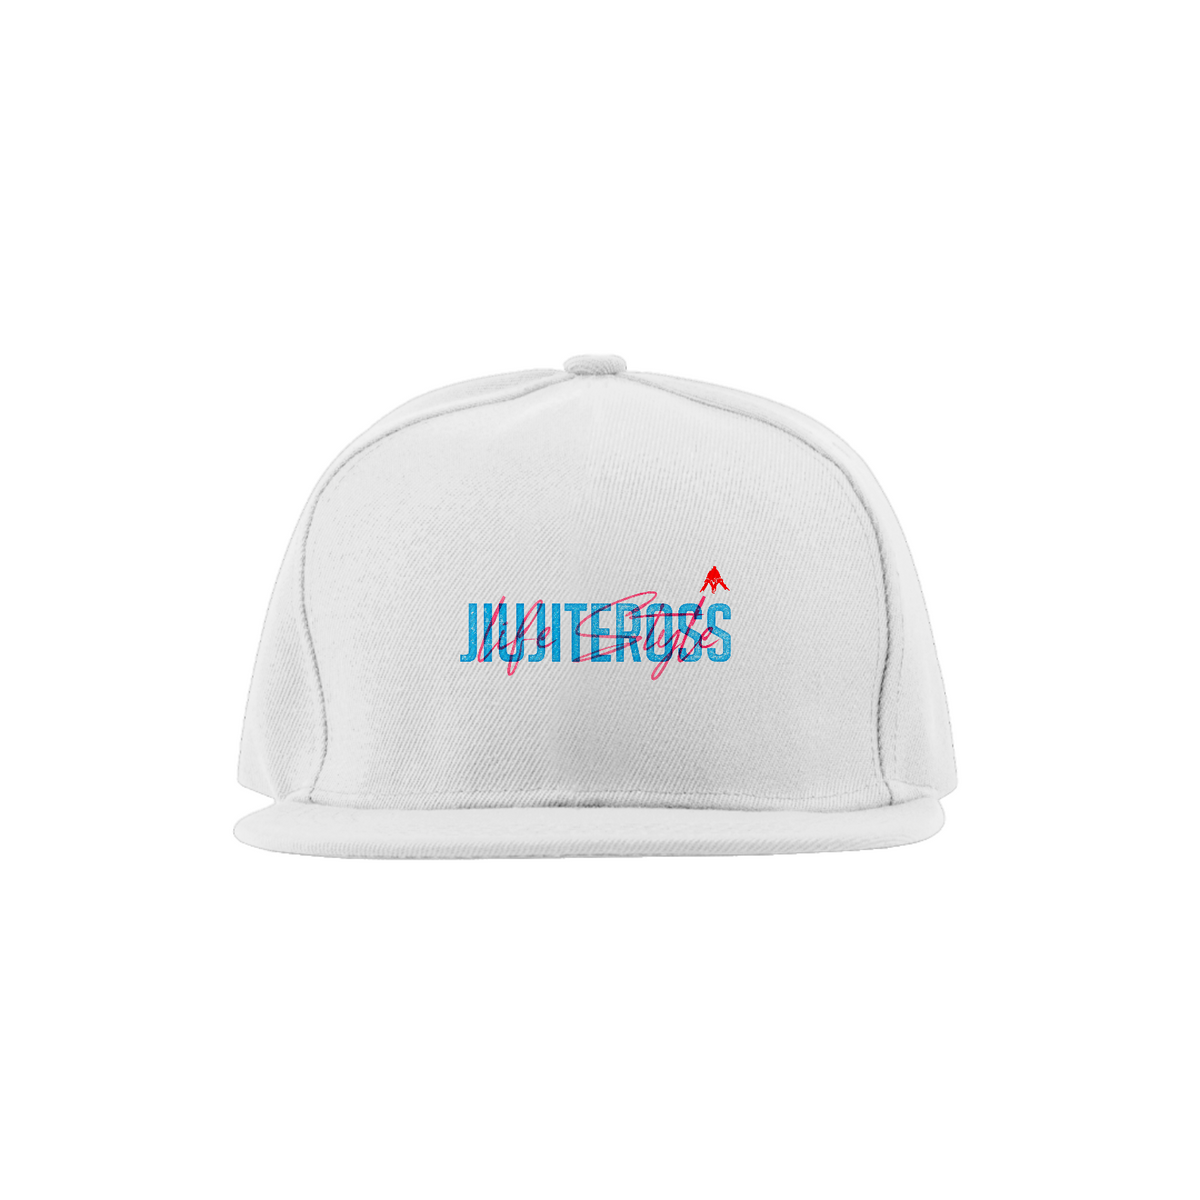 Nome do produto: Boné JiuJiterOss Life Style